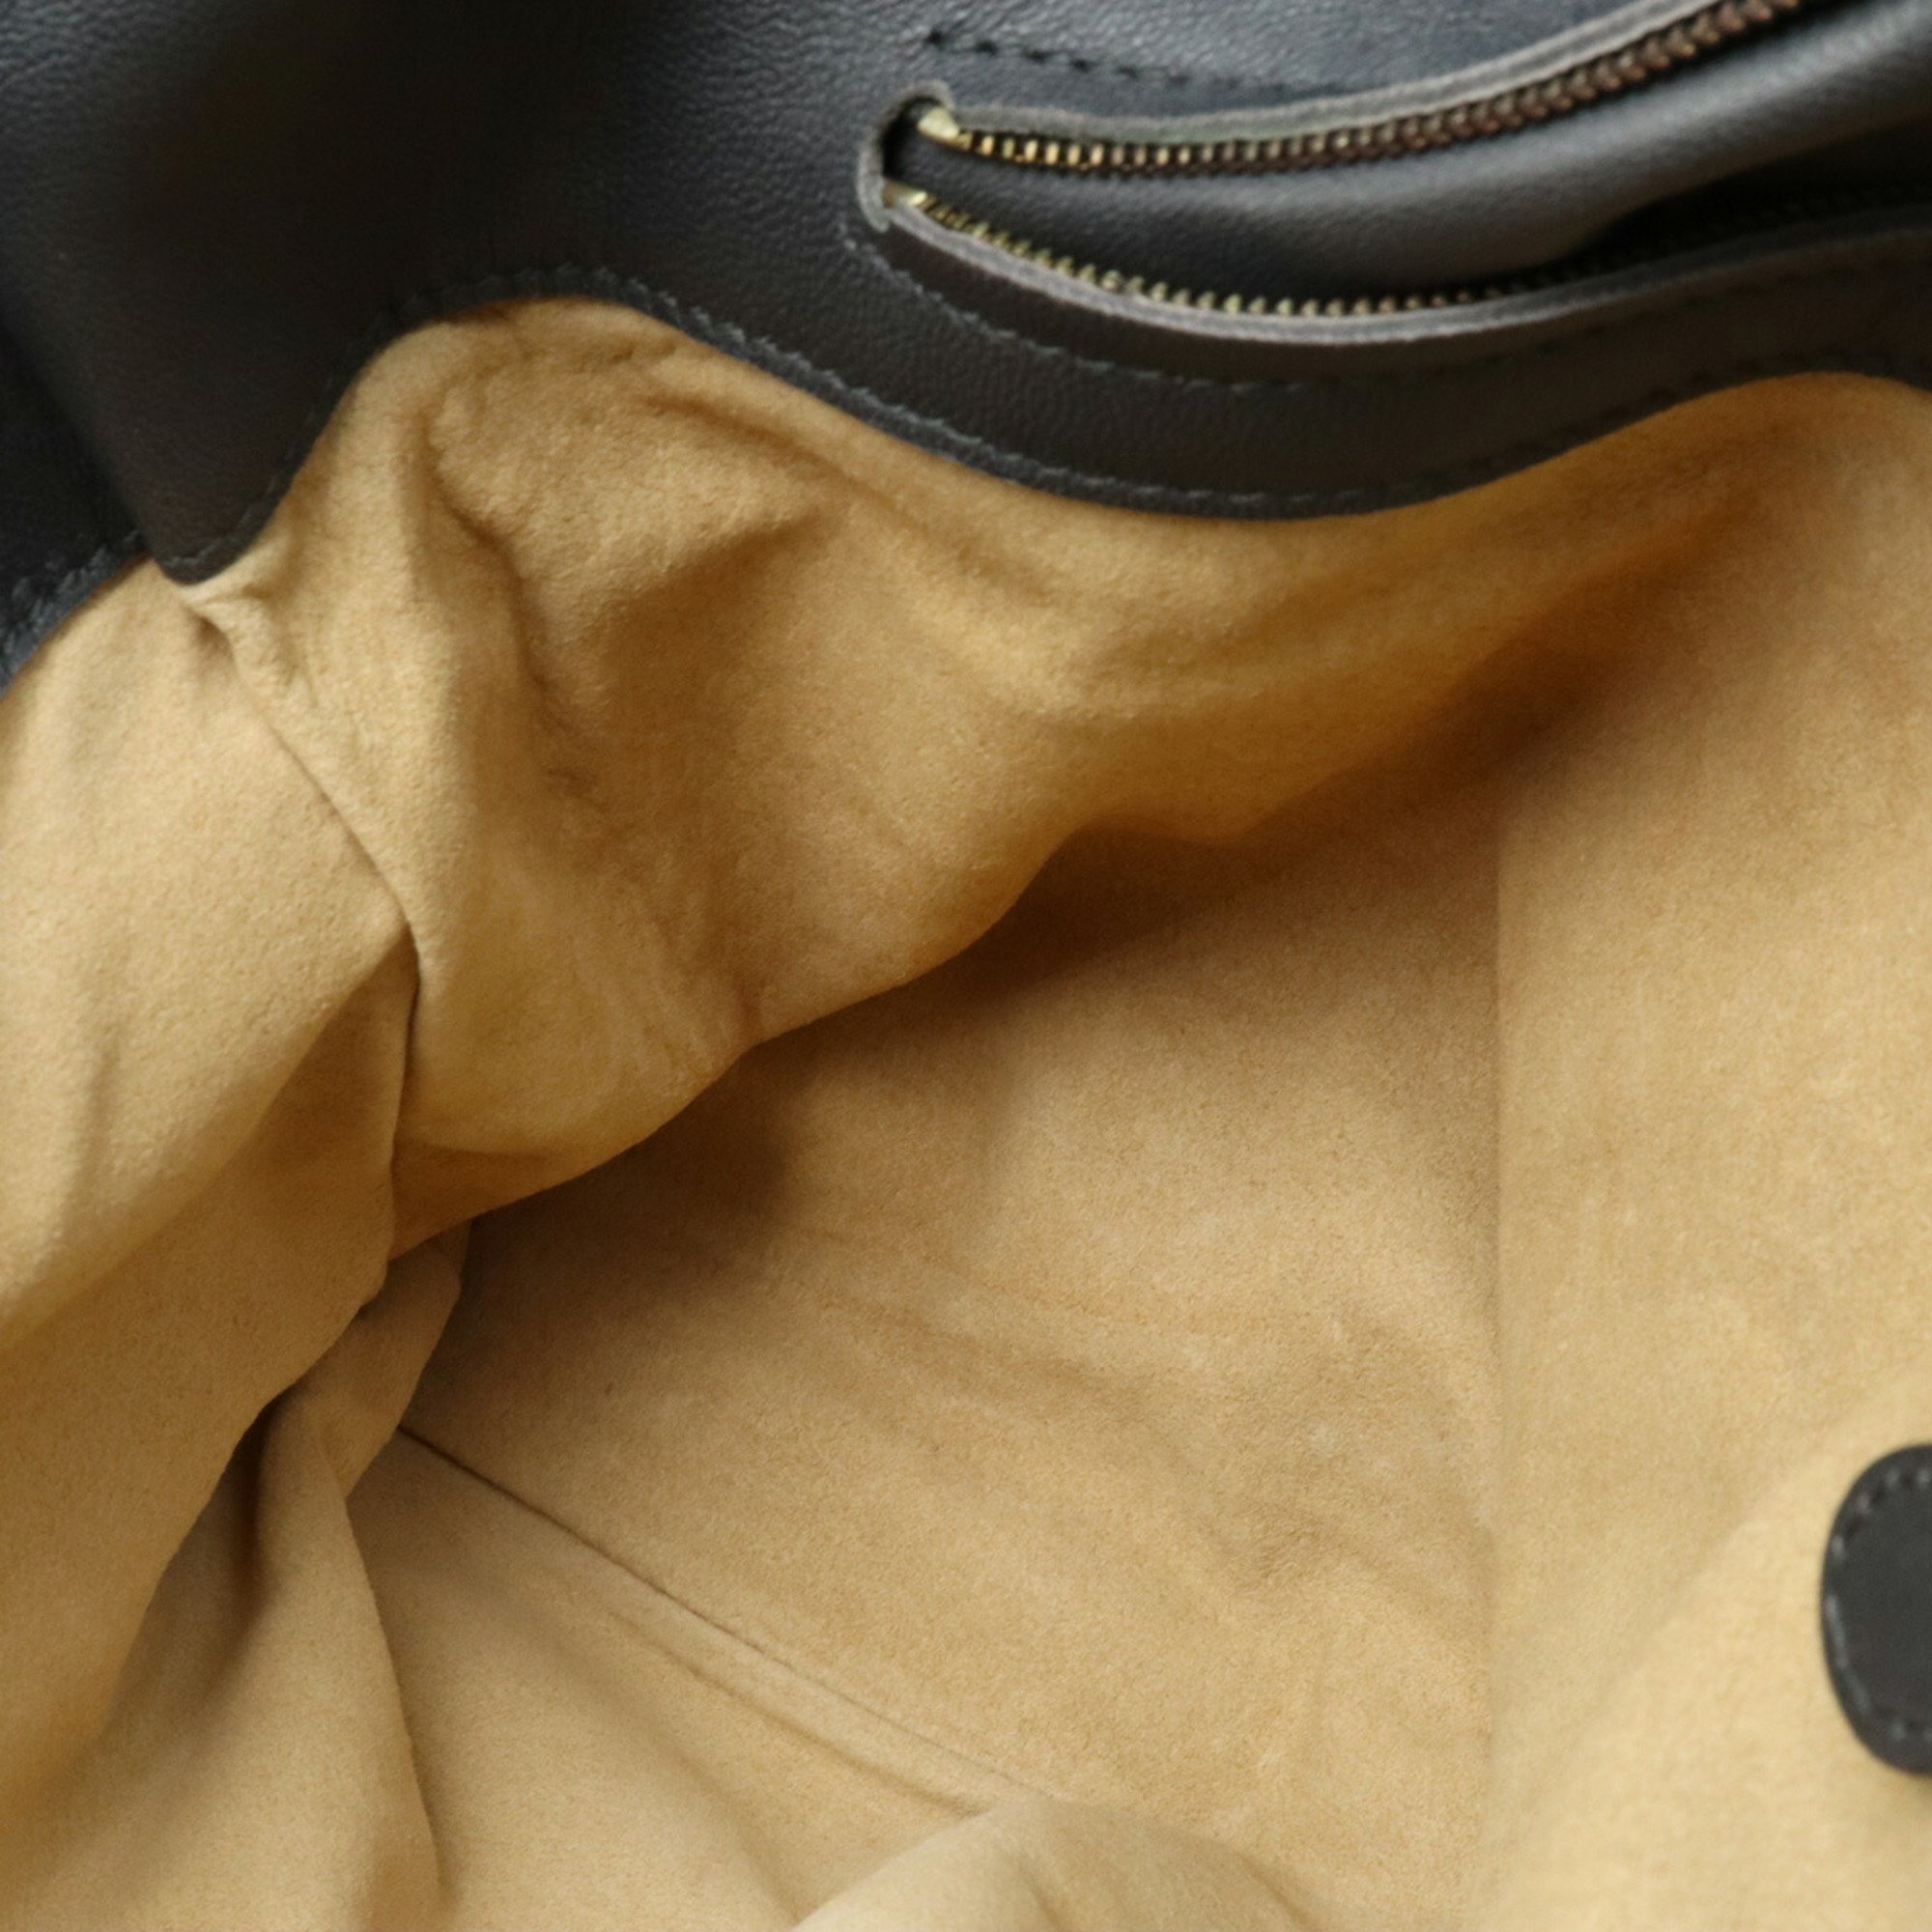 BOTTEGA VENETA Bottega Veneta Intrecciato Roma Bag Tote Shoulder Leather Dark Gray 171265